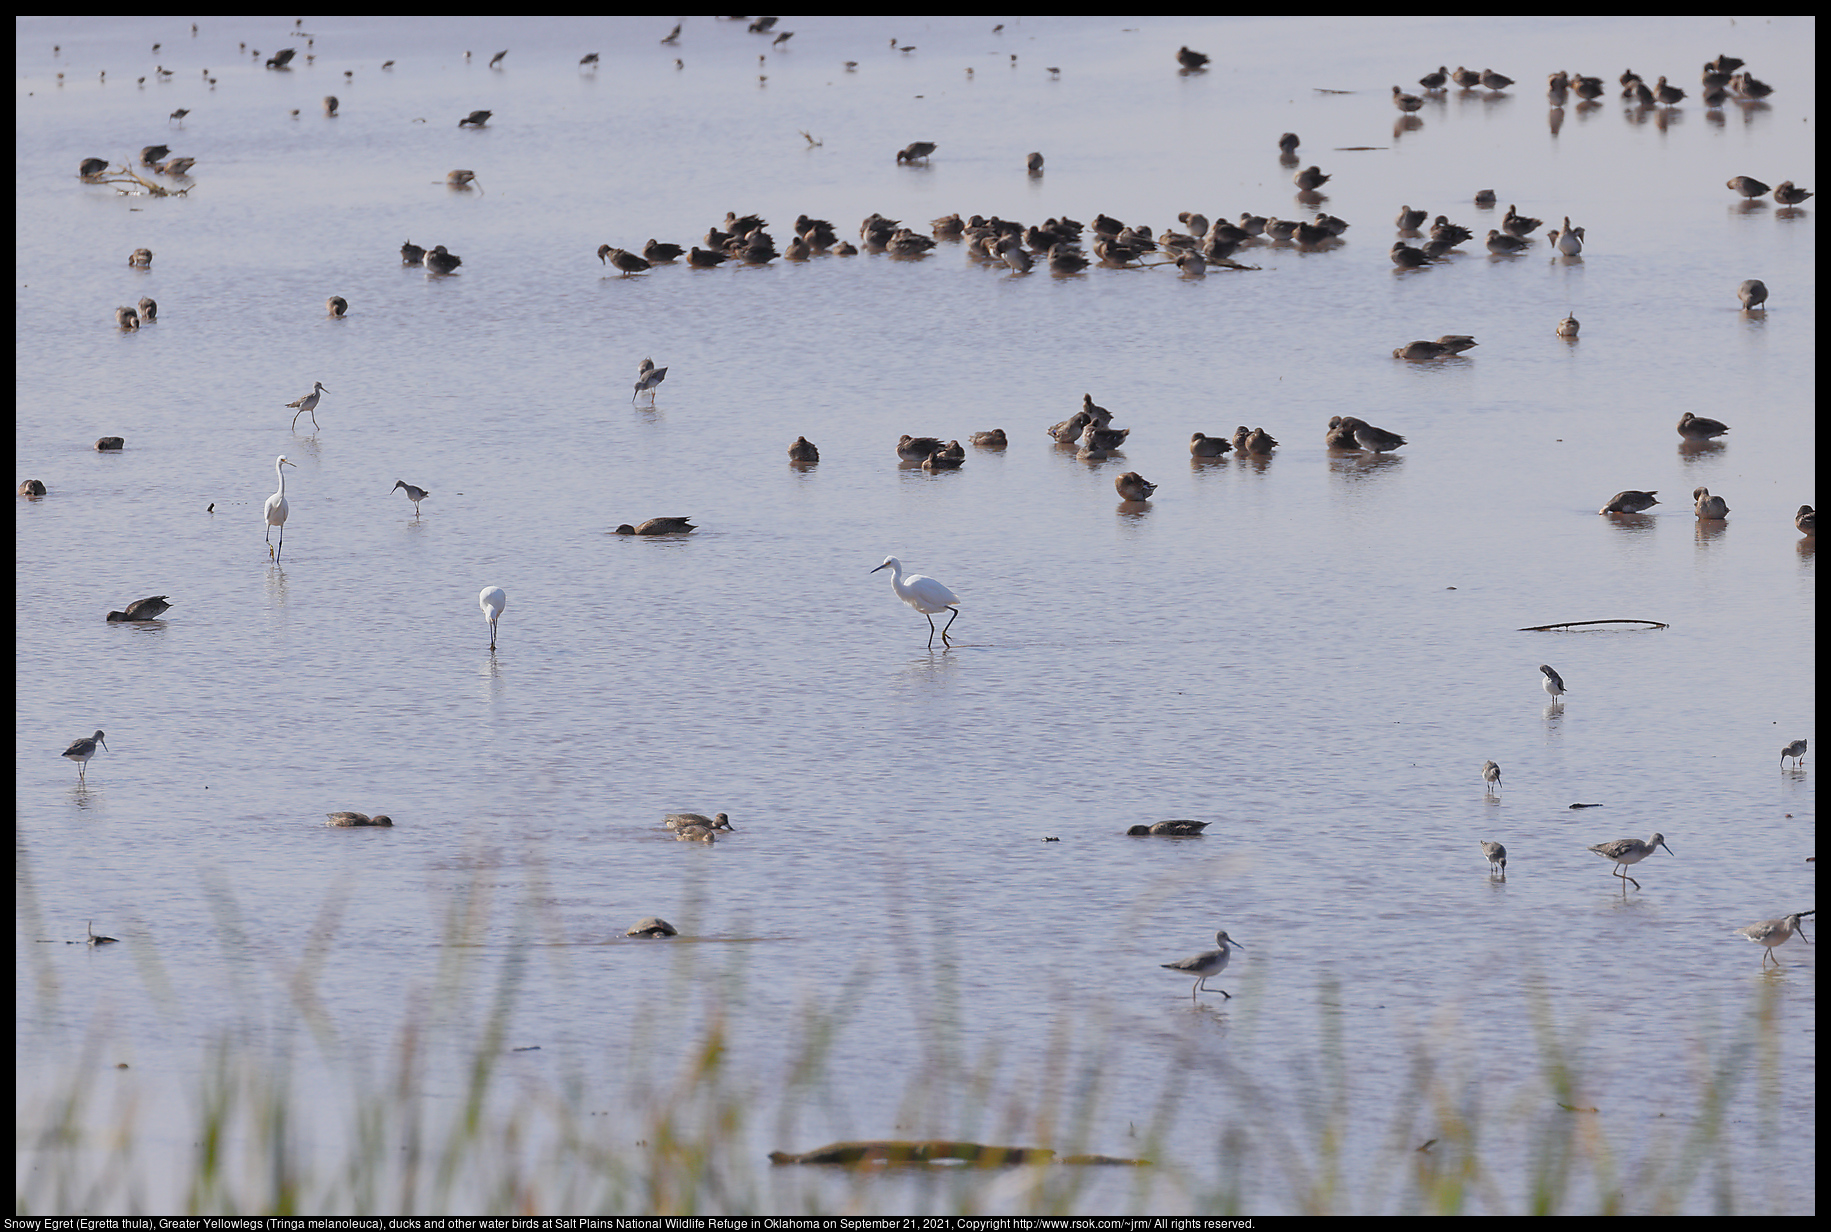 Snowy Egret (Egretta thula), Greater Yellowlegs (Tringa melanoleuca), ducks and other water birds at Salt Plains National Wildlife Refuge in Oklahoma on September 21, 2021